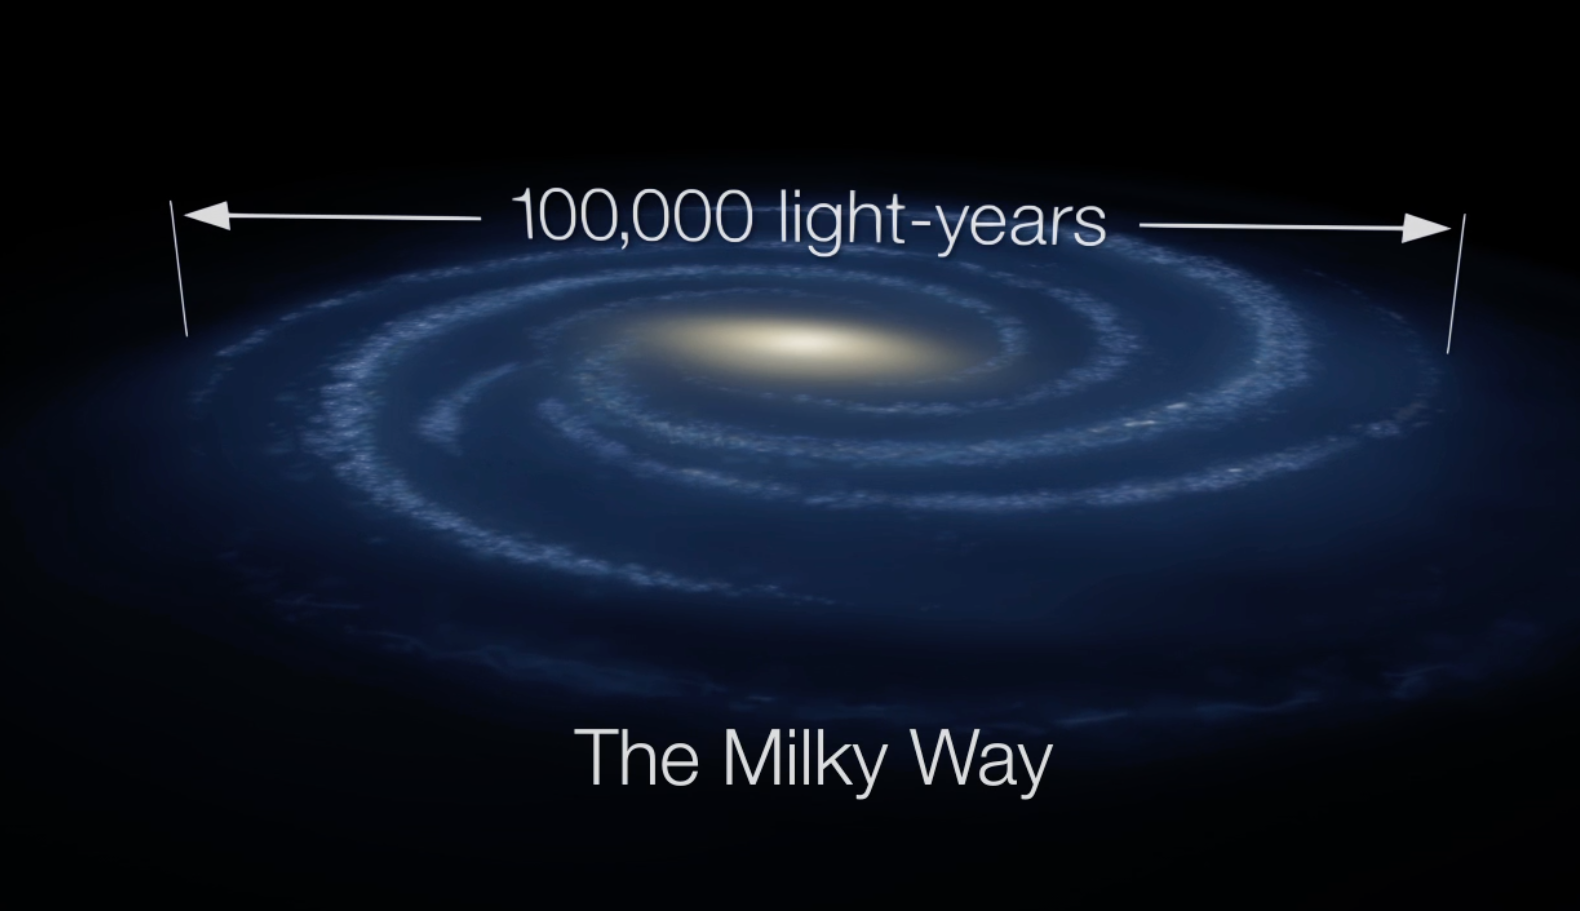 Representação artística da Via Láctea com um diâmetro de 100 mil anos-luz.